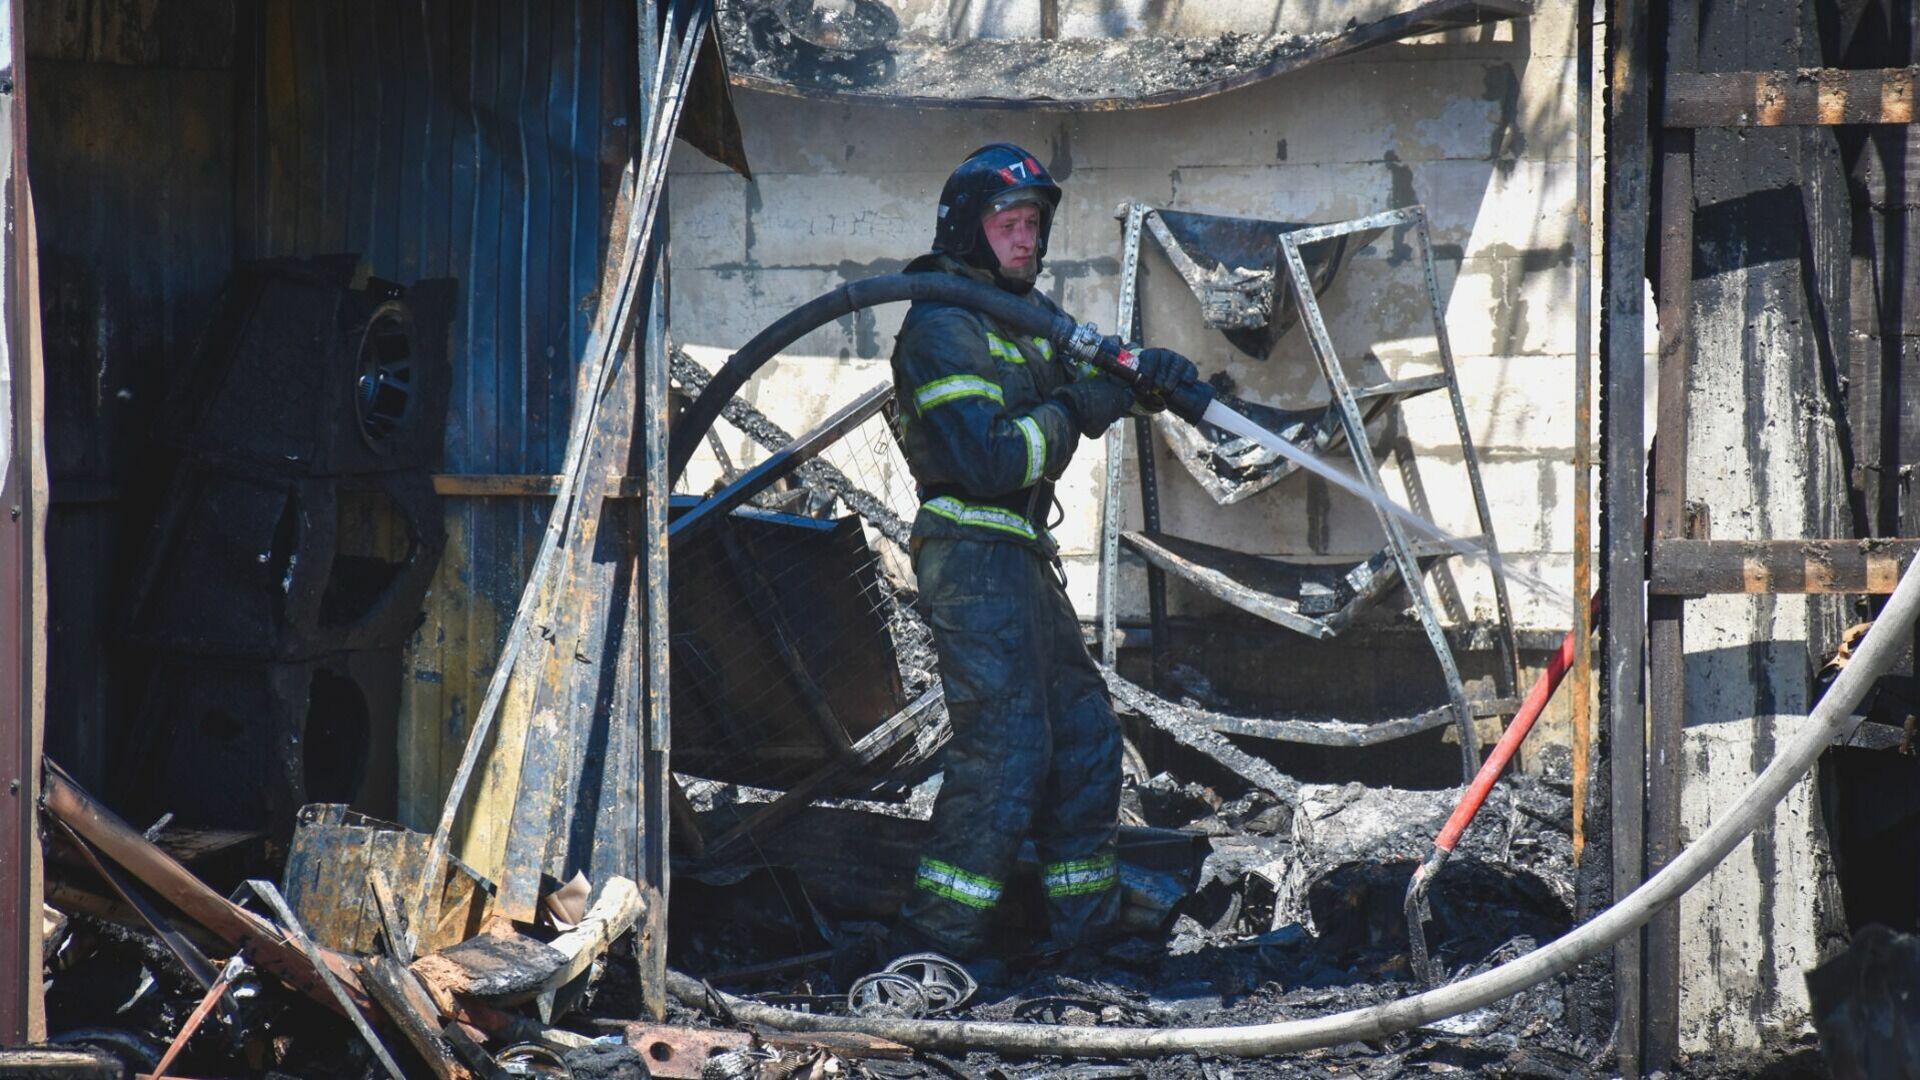 Пожар потушили в доходном доме братьев Парамоновых в Ростове-на-Дону днем 7 декабря